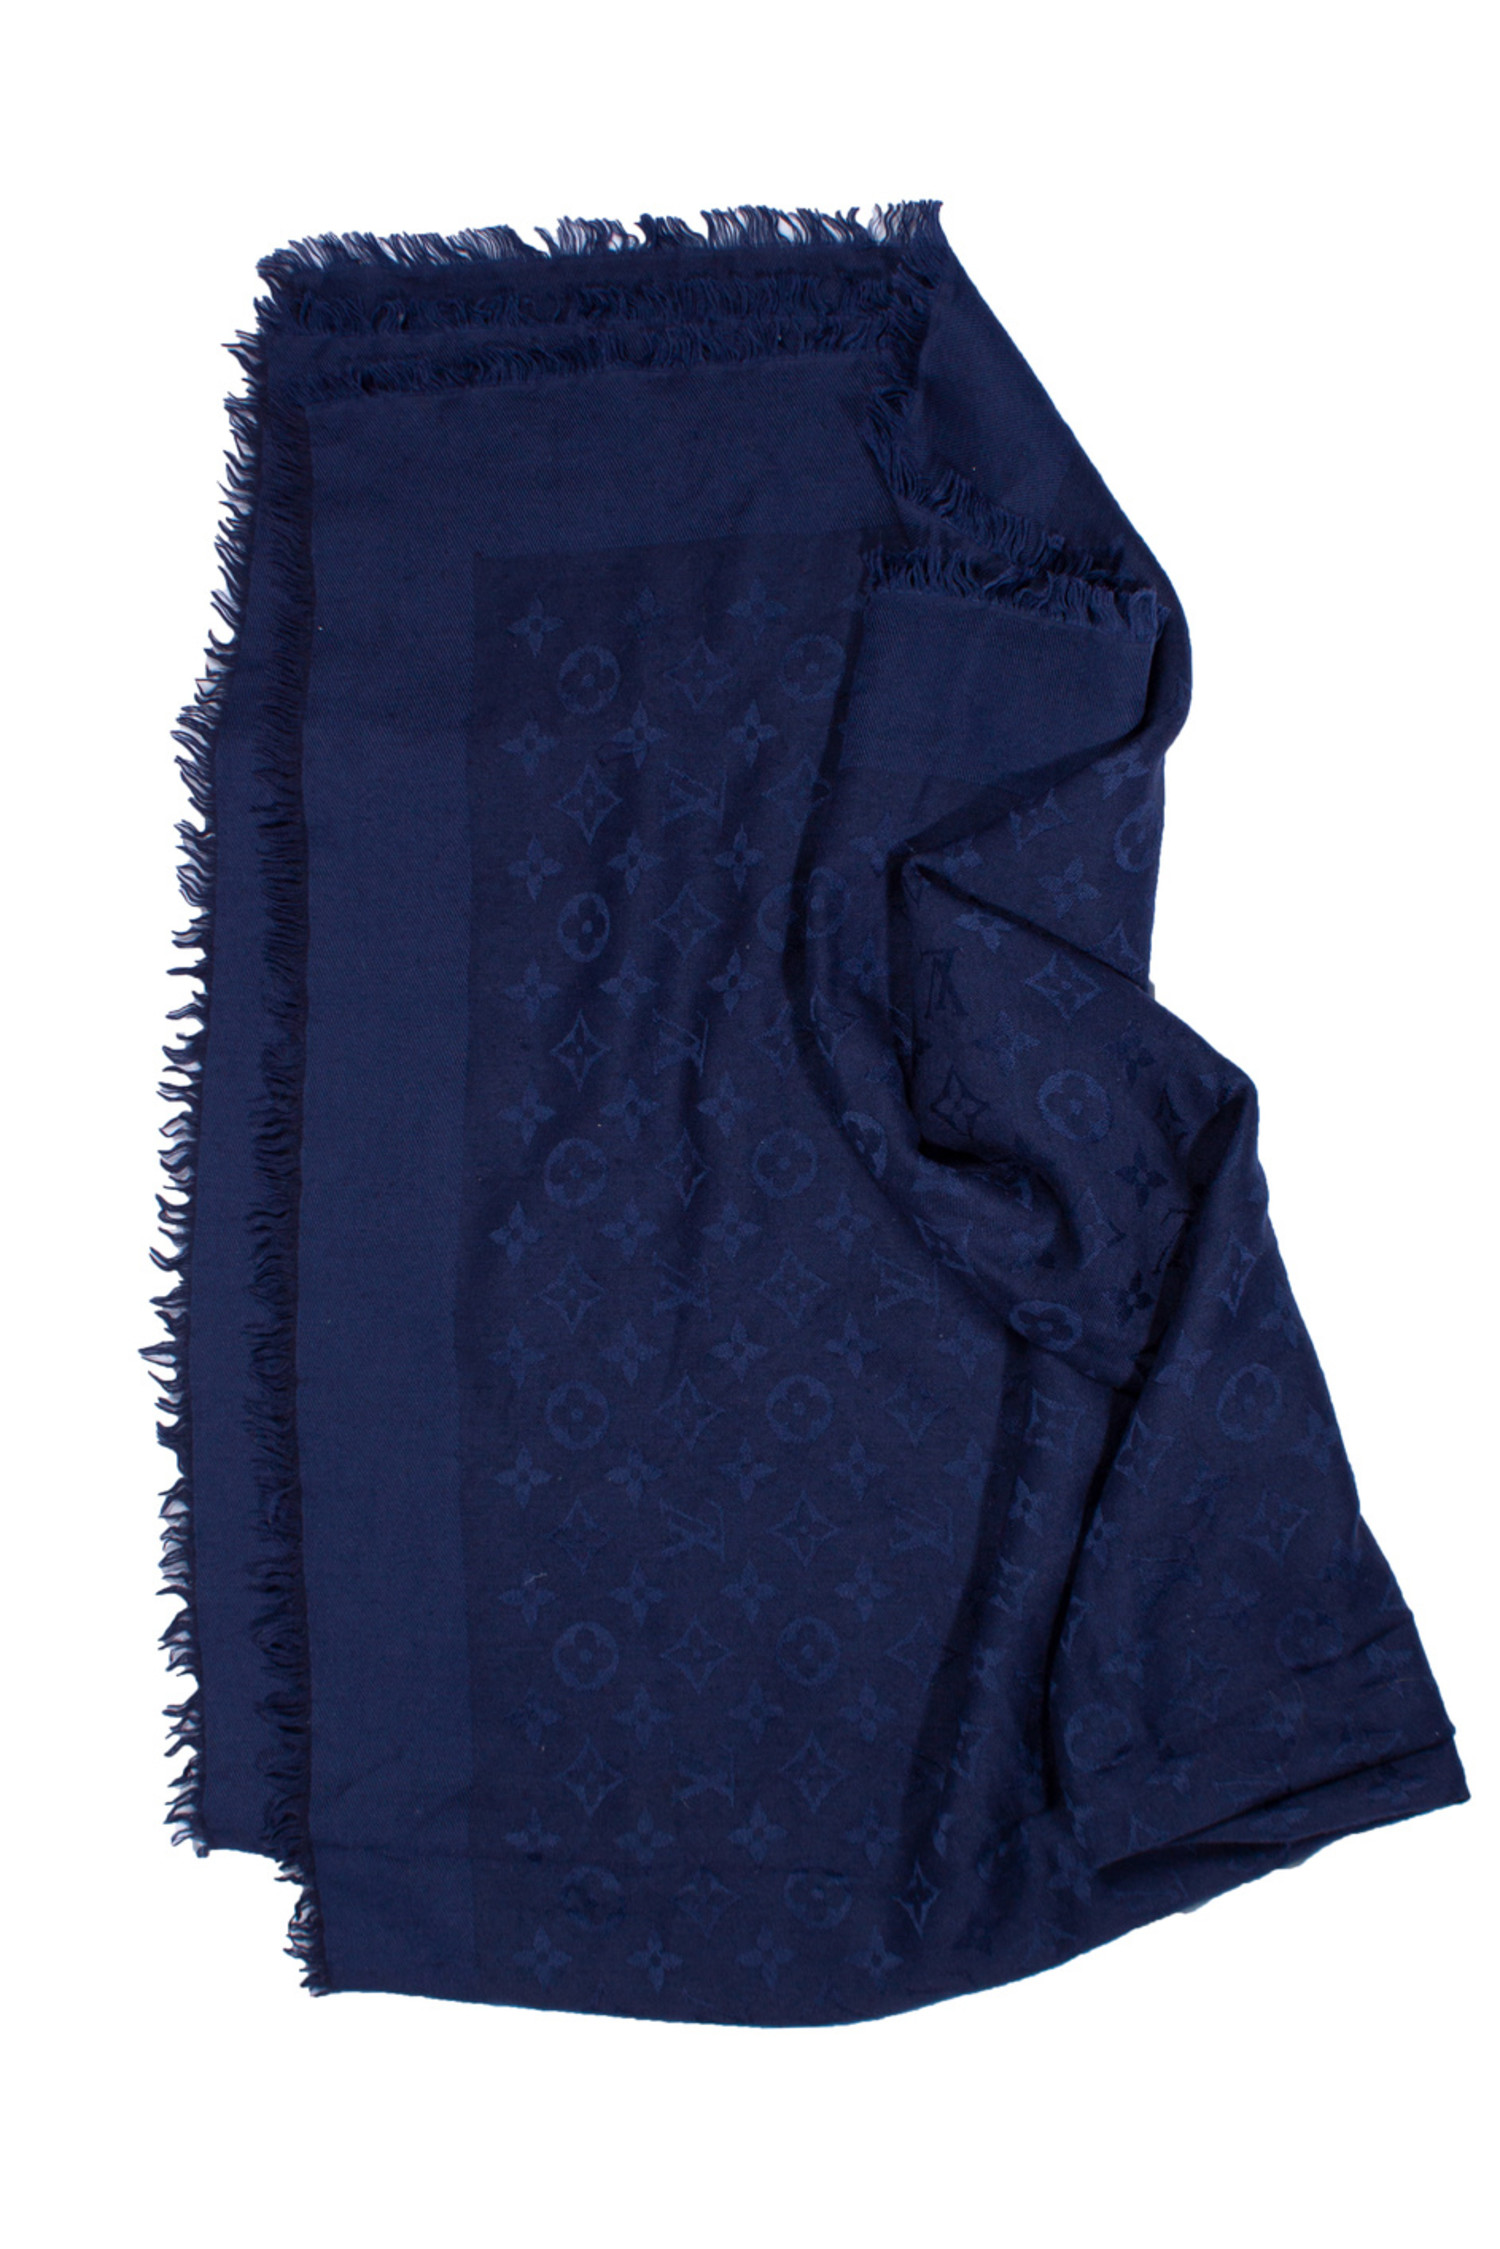 louis vuitton blue shawl